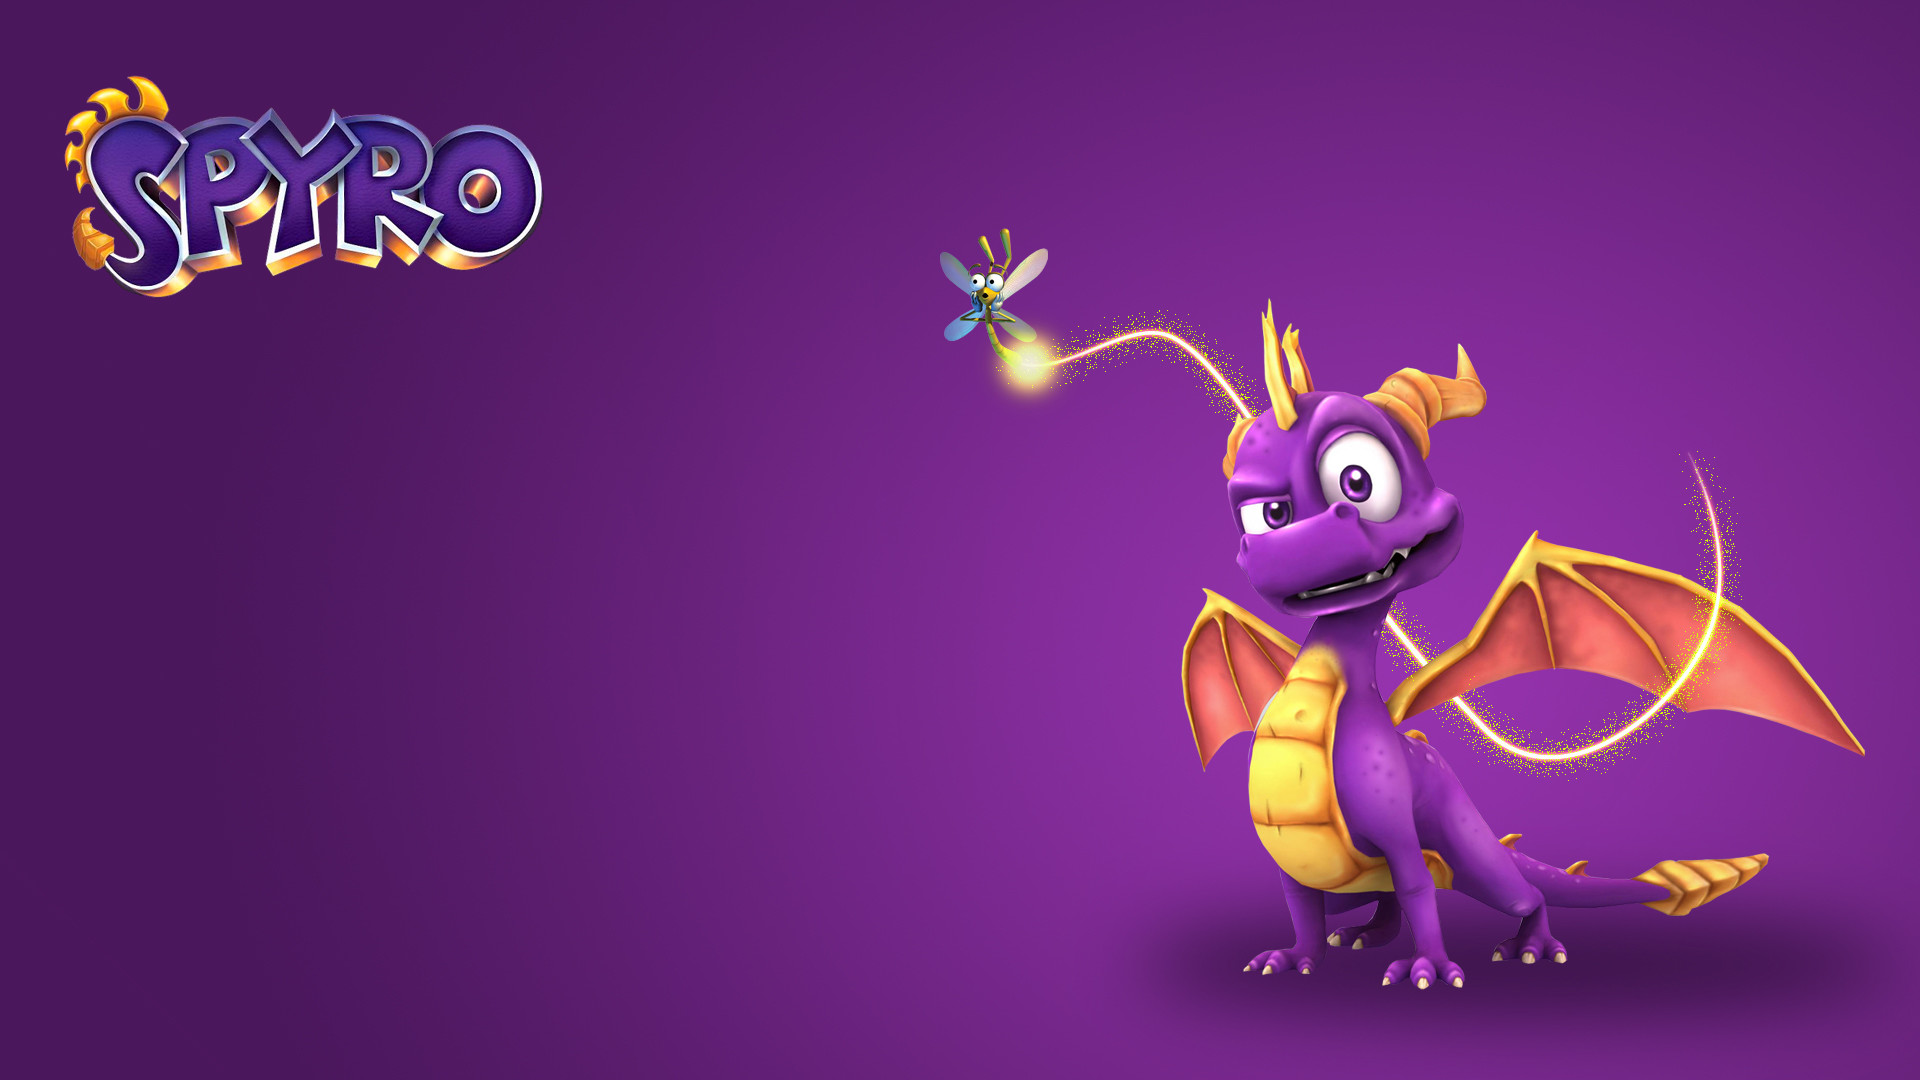 Spyro The Dragon Wallpaper.